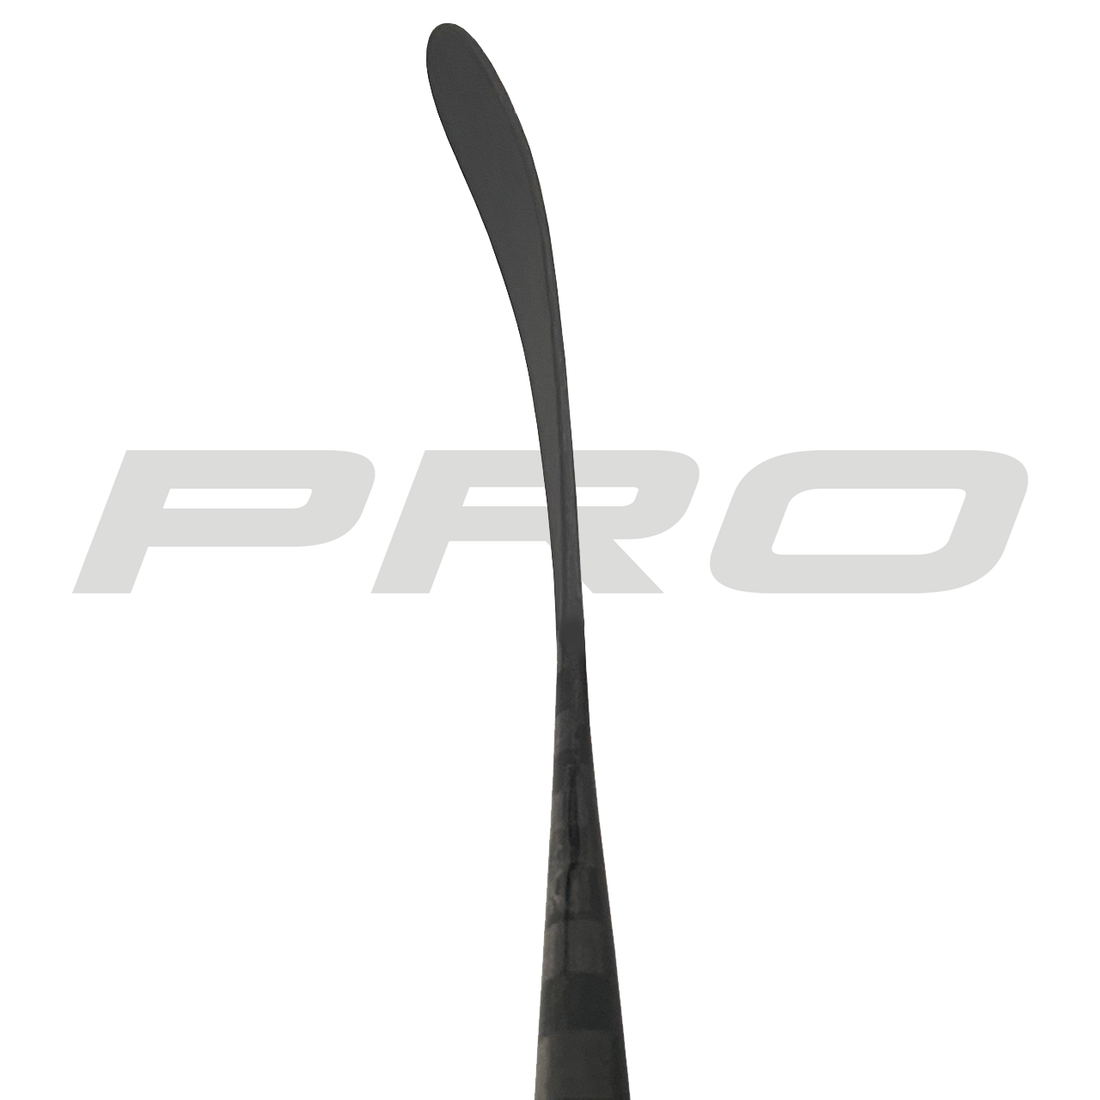 PRO272 (ST: Kovalev Pro) - Third Line (425 G) - Pro Stock Hockey Stick - Right